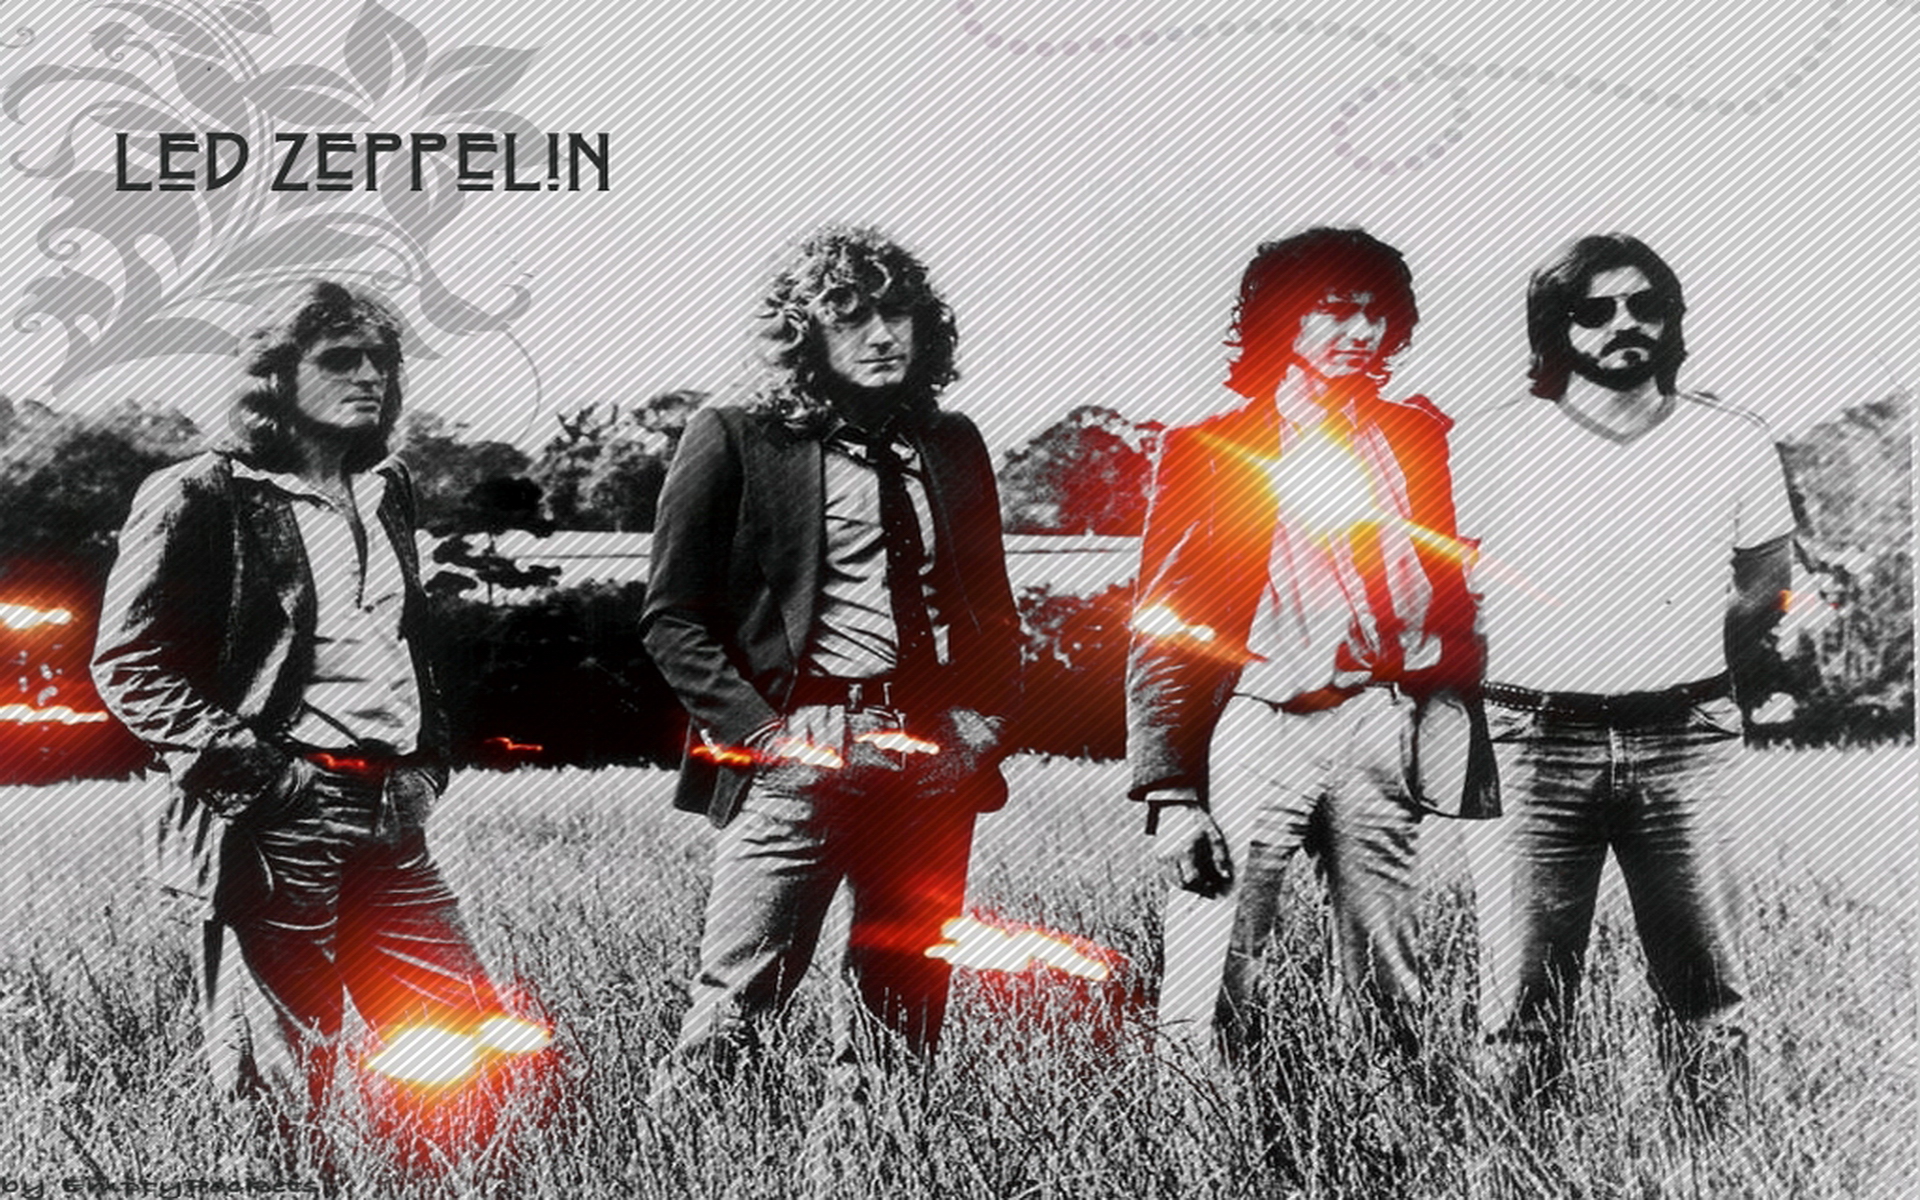 Led Zeppelin Wallpaper